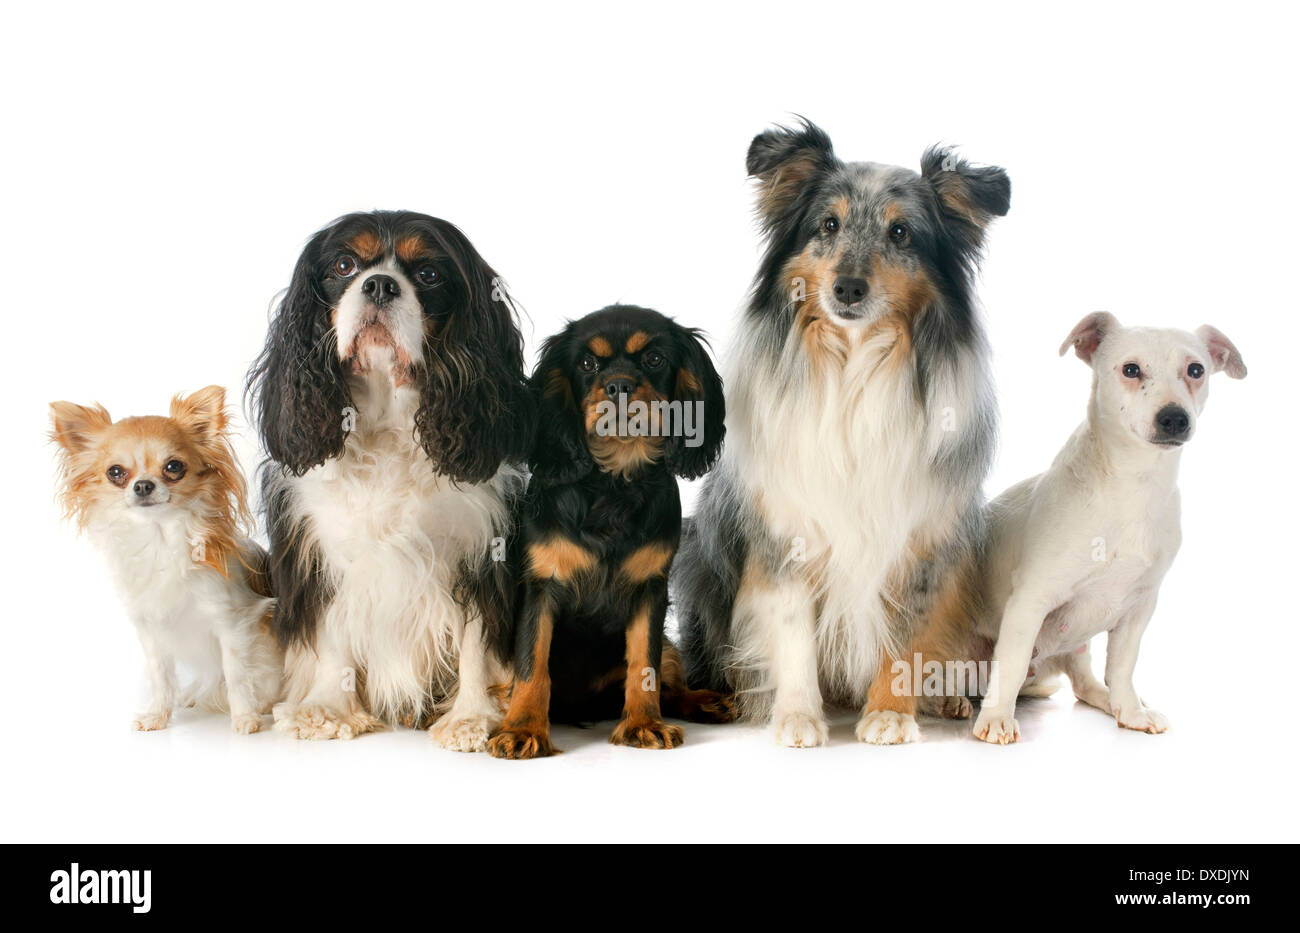 Cucciolo e adulto Cavalier King Charles, chihuahua, jack russel terrier e shetland sheepdog davanti a uno sfondo bianco Foto Stock